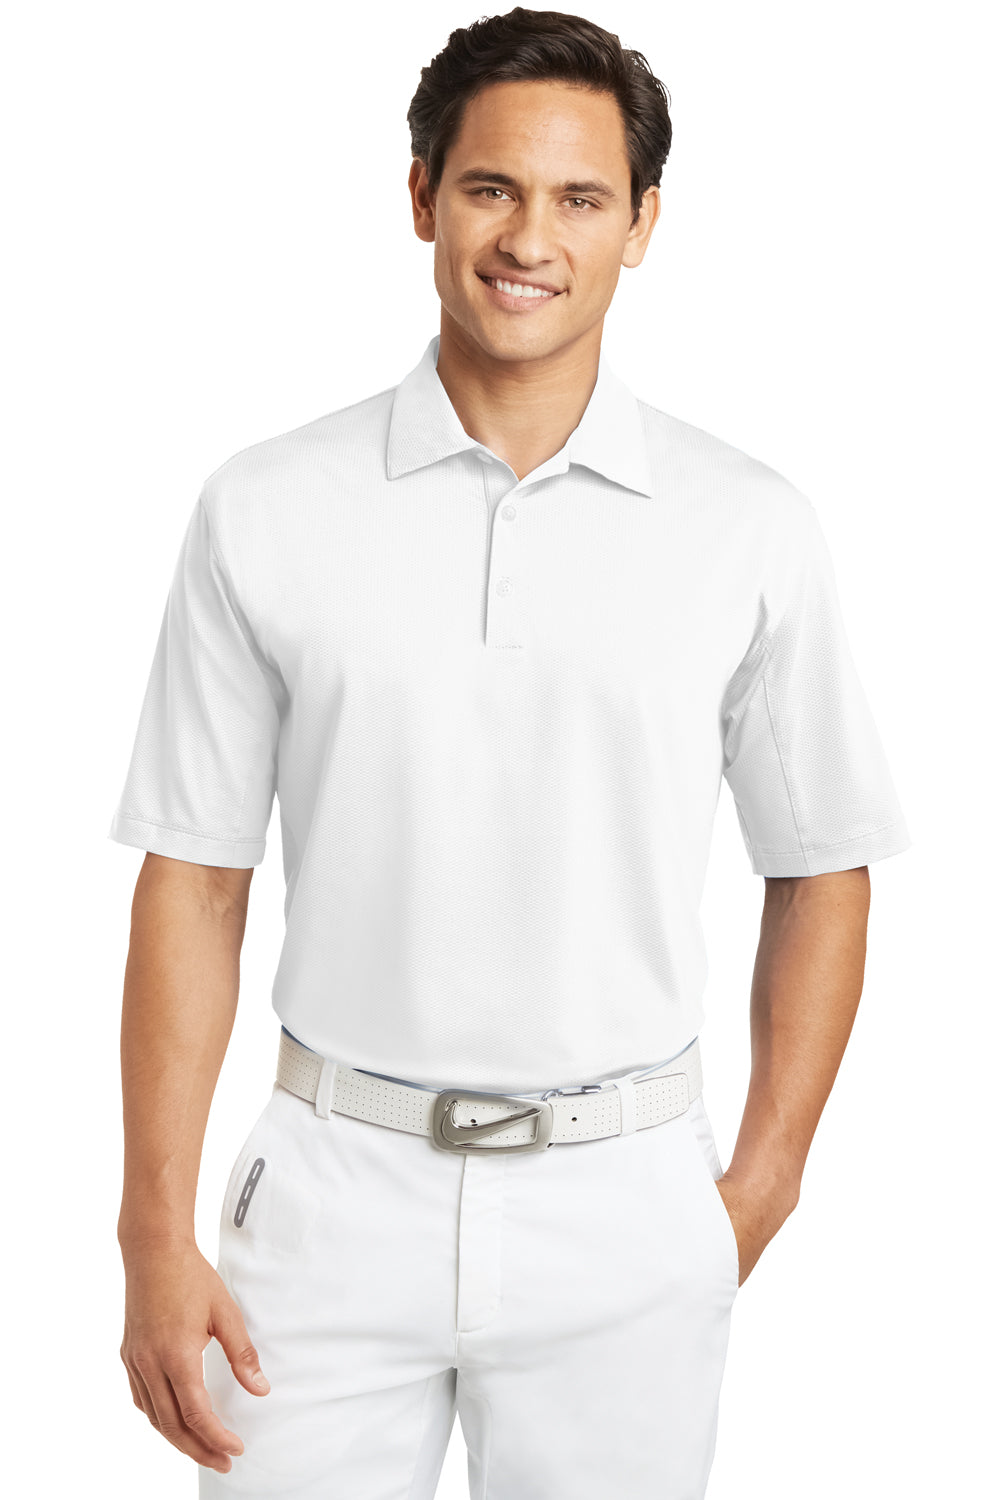 Nike 354055 Mens Sphere Dry Moisture Wicking Short Sleeve Polo Shirt White Front